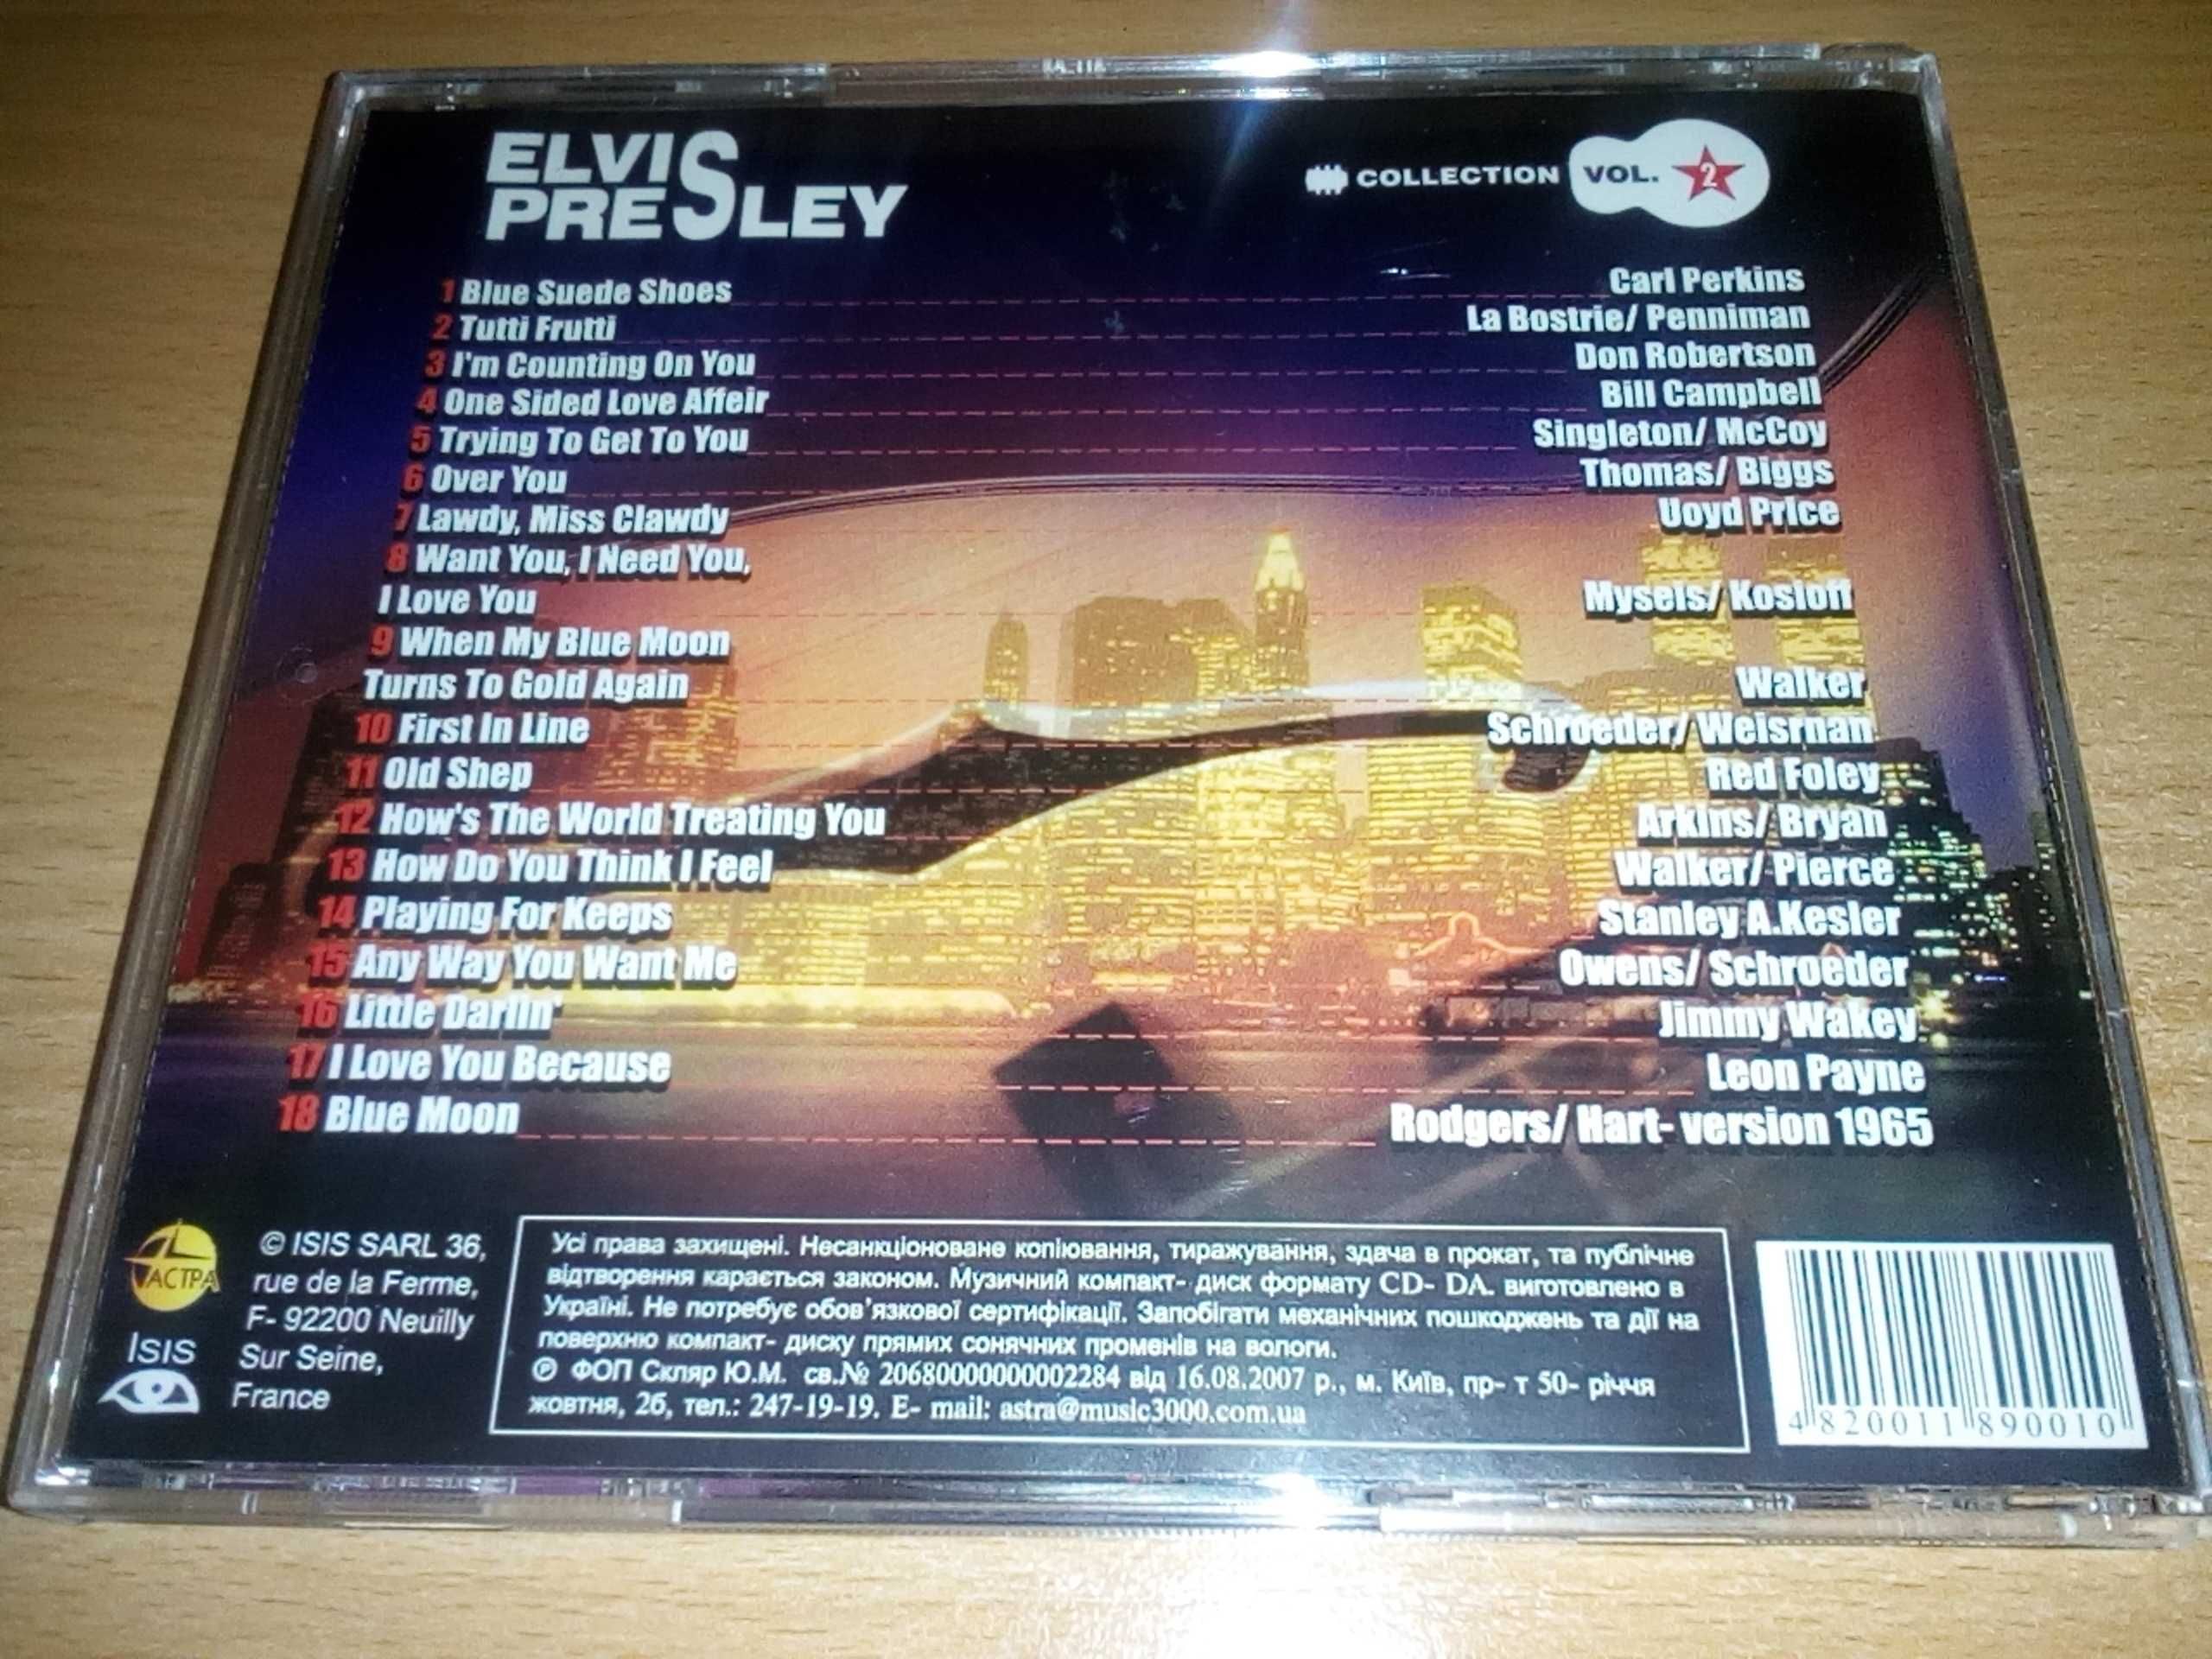 Elvis Presley - Collection Vol 2